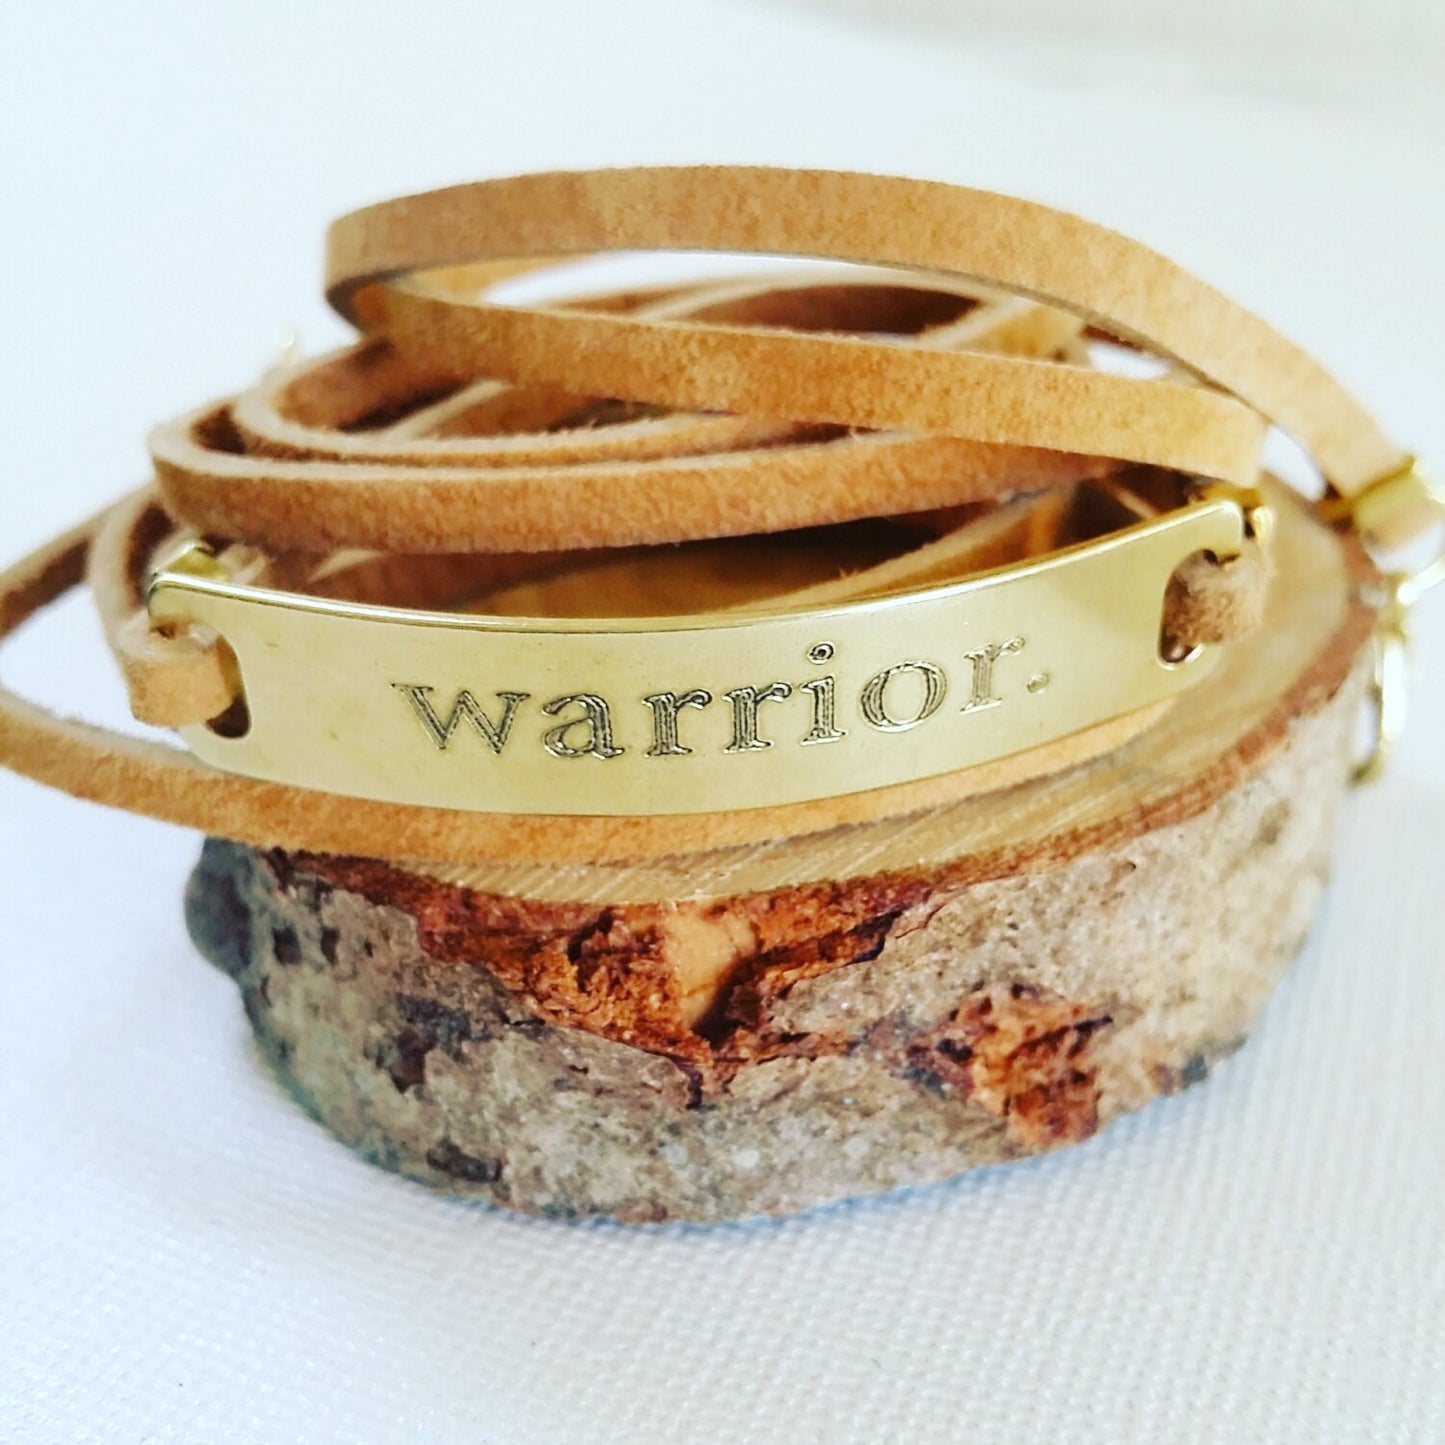 Brazalete de guerrero, brazalete de cuero, brazalete de barra de mensaje inspirador personalizado, joyería de cita motivacional grabada, regalo de sobreviviente.